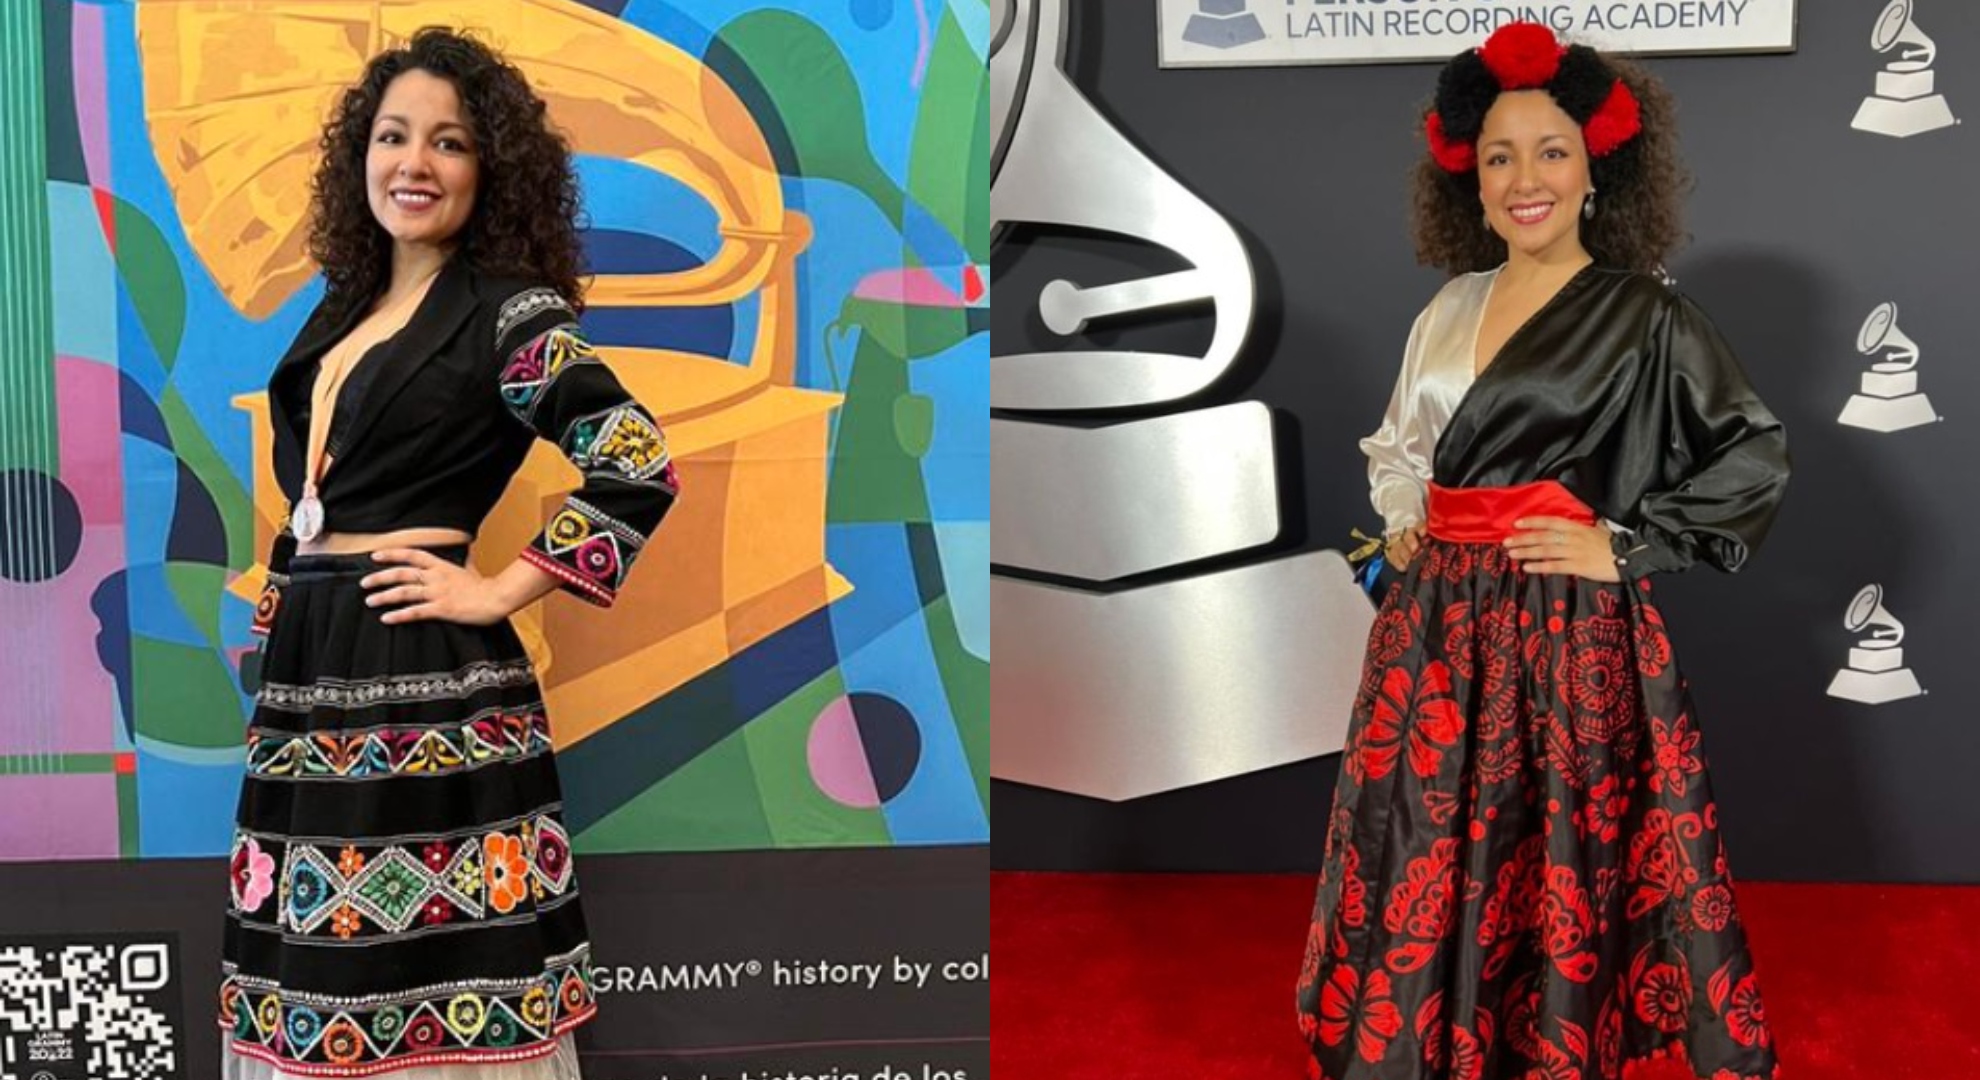 Araceli Poma, la peruana que competirá contra Rosalía en los Latin Grammy 2022: “Orgullosa de mis raíces”